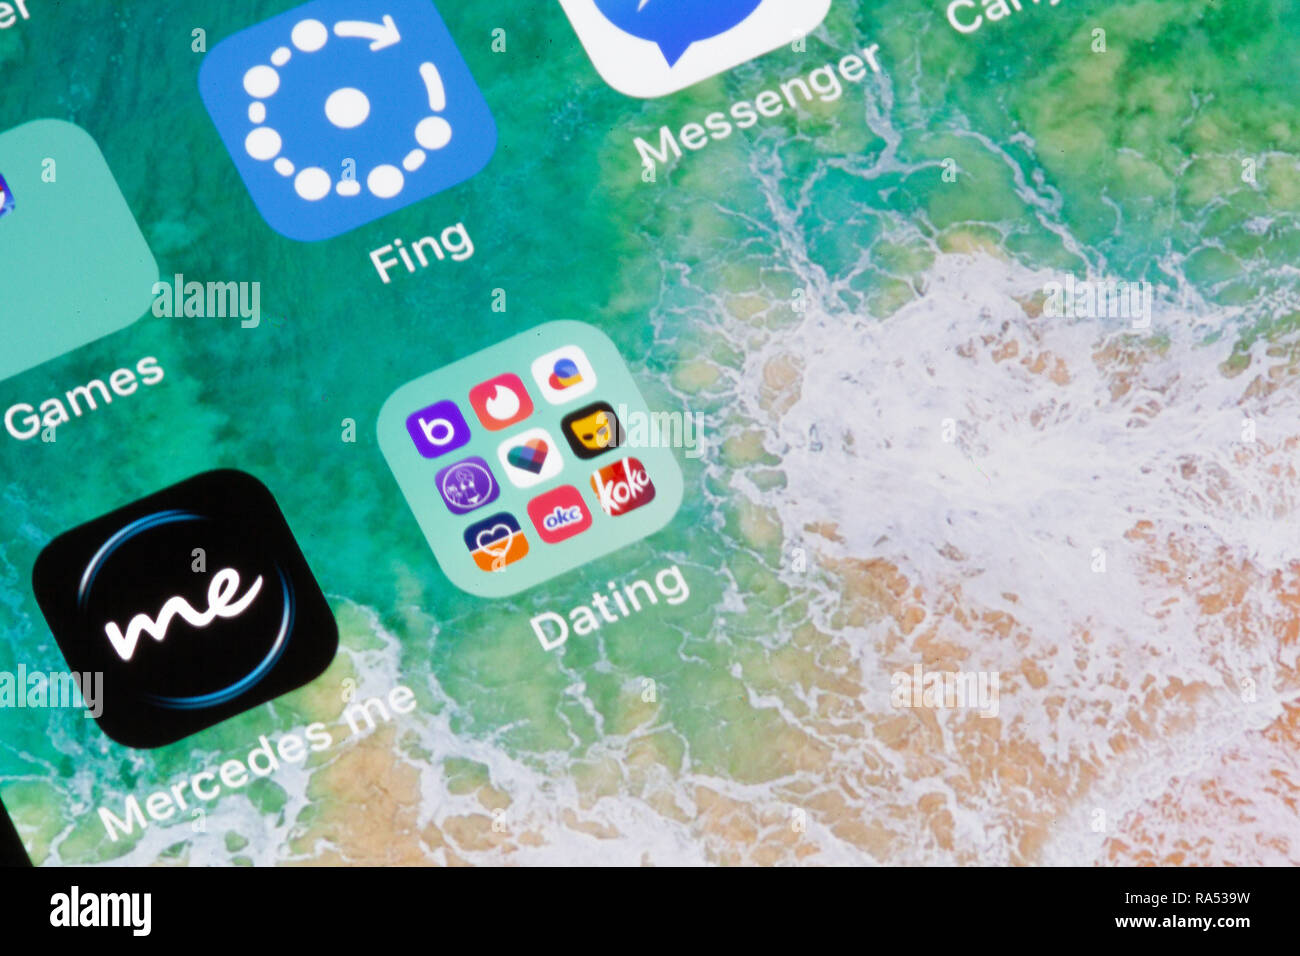 Nuremberg, Allemagne - 29 décembre 2018 : une photo en gros plan de l'écran de l'iPhone d'Apple avec des icônes d'apps et de rencontres Mercedes moi et d'autres. Banque D'Images